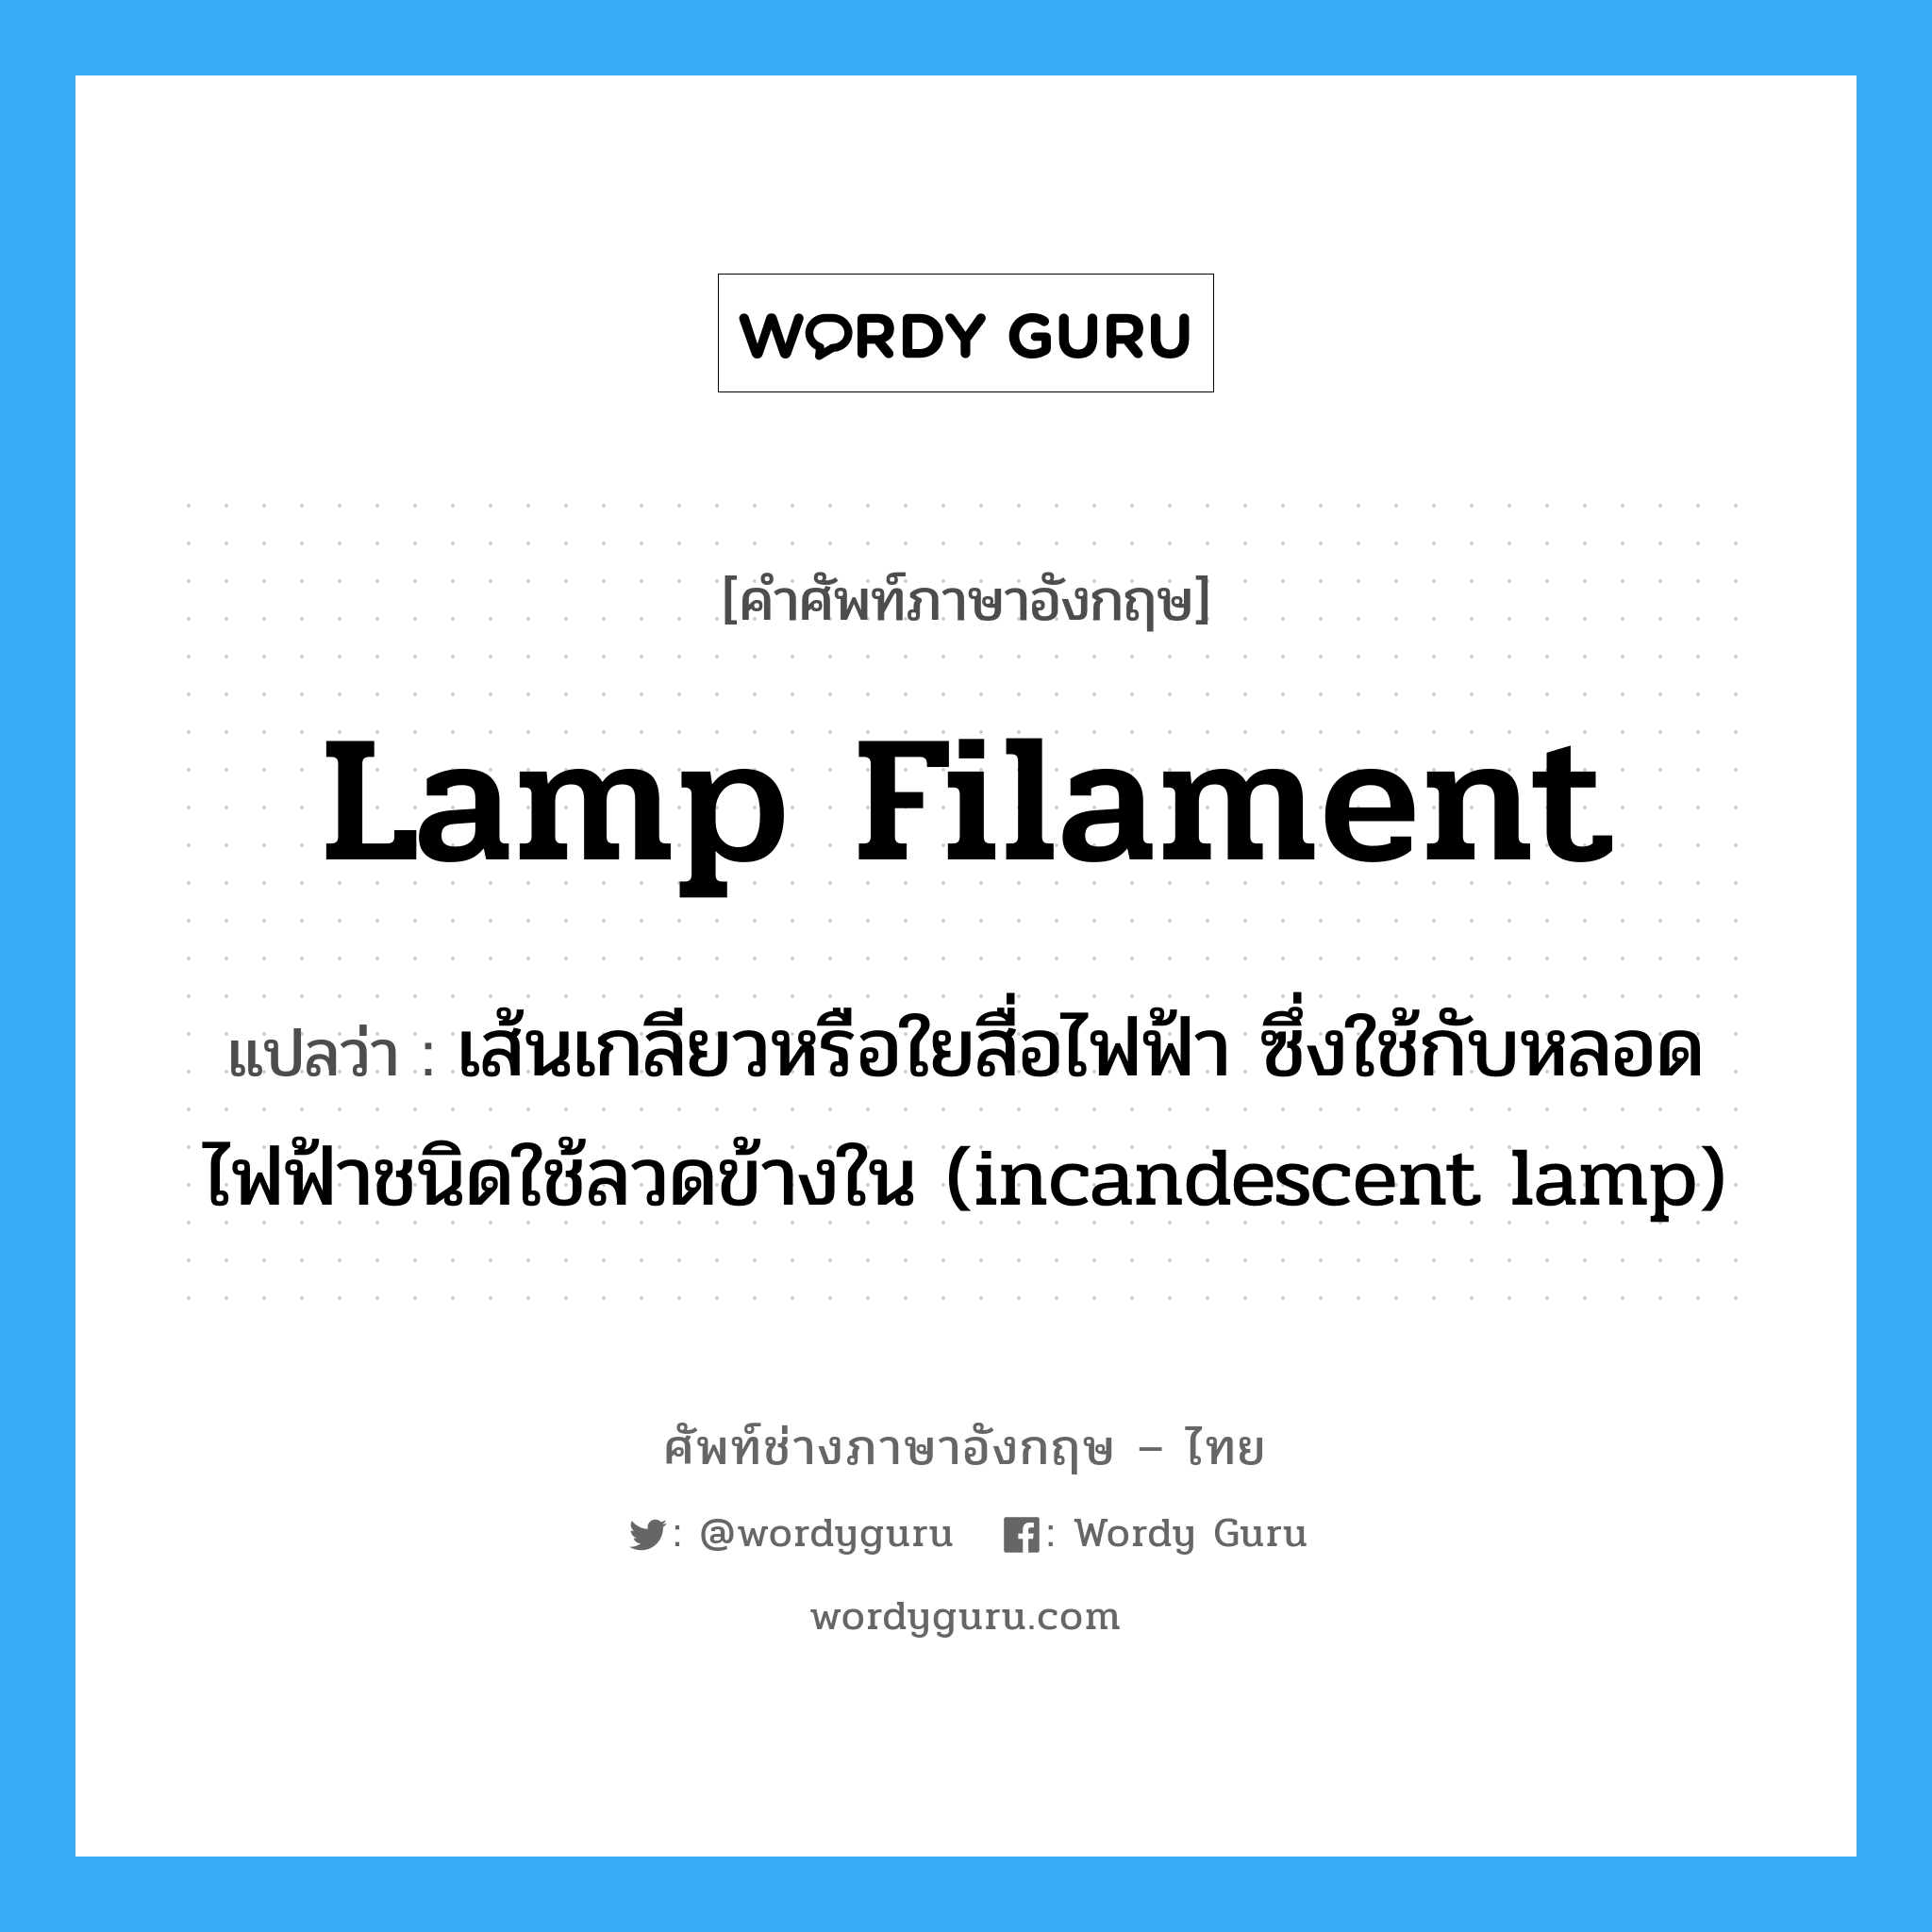 lamp filament แปลว่า?, คำศัพท์ช่างภาษาอังกฤษ - ไทย lamp filament คำศัพท์ภาษาอังกฤษ lamp filament แปลว่า เส้นเกลียวหรือใยสื่อไฟฟ้า ซึ่งใช้กับหลอดไฟฟ้าชนิดใช้ลวดข้างใน (incandescent lamp)